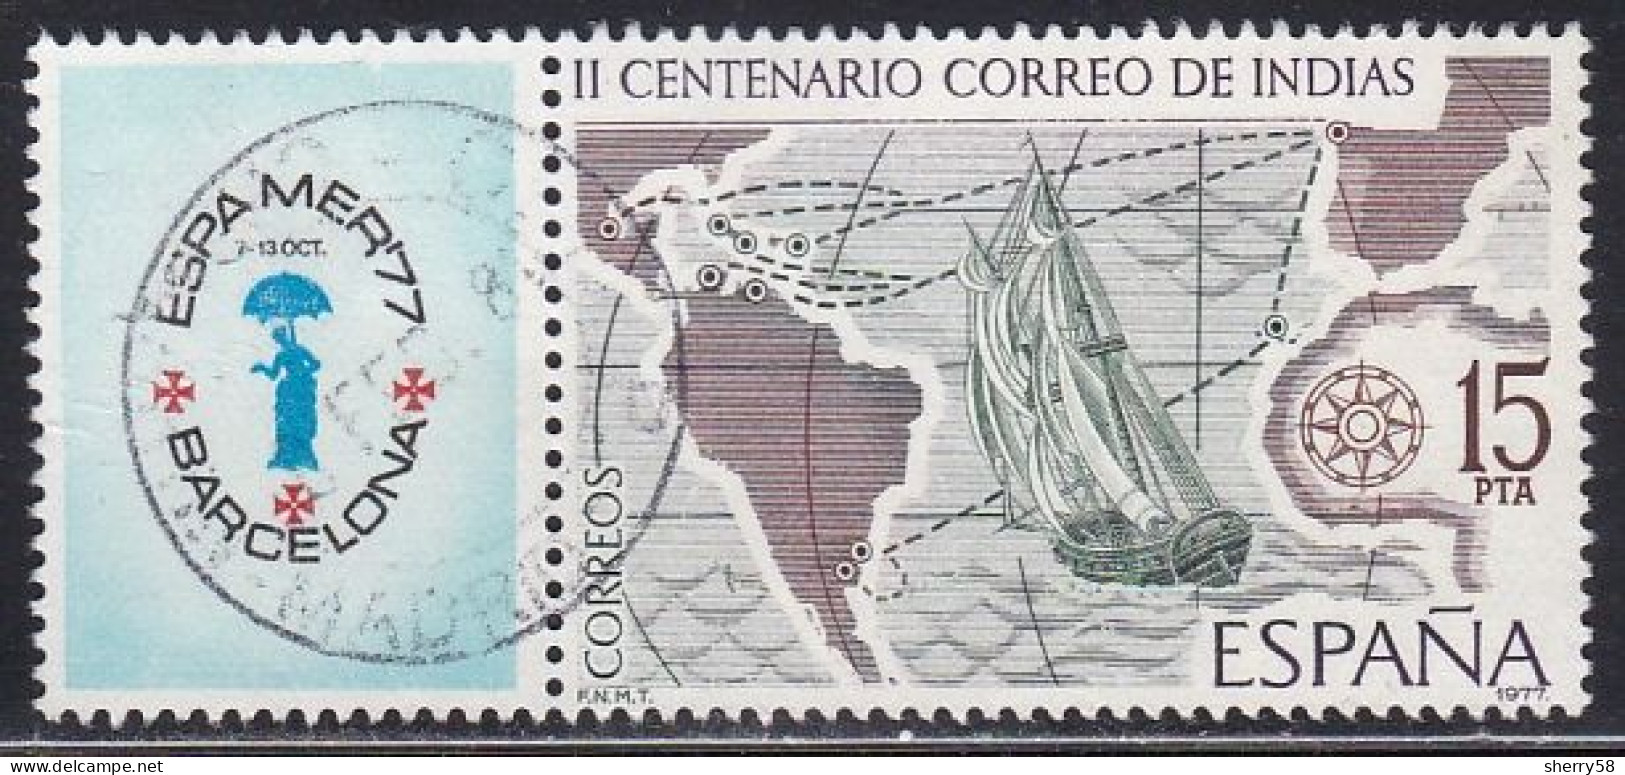 1977-ED. 2437-COMPLETA CON BANDELETA-CORREO MARITIMO.ESPAMER'77-USADO - Gebruikt